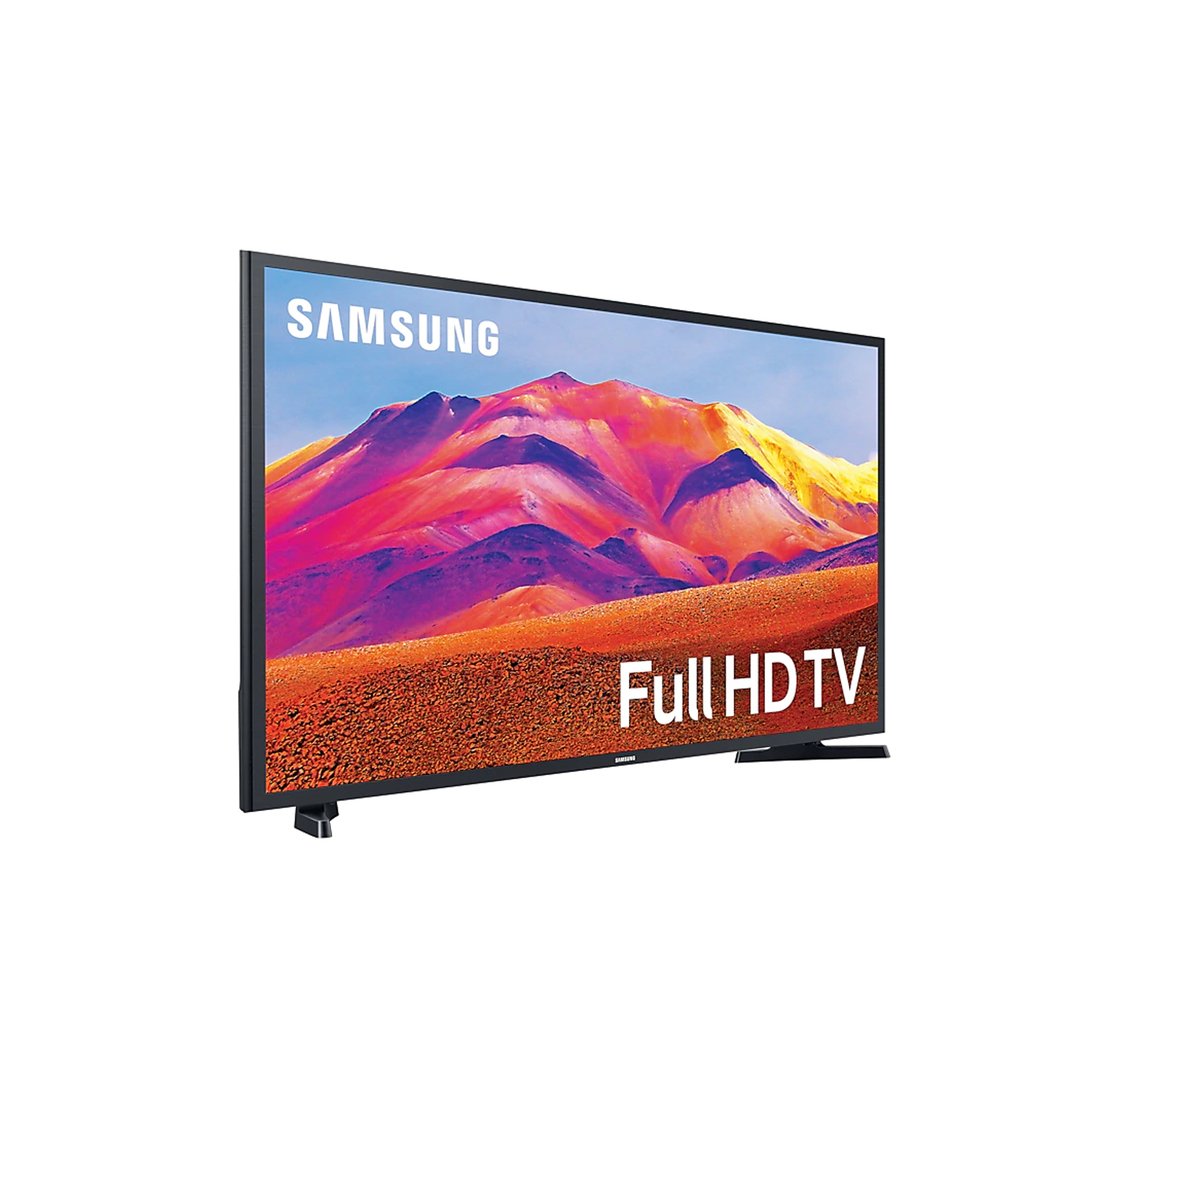 Samsung Full HD Smart TV UA43T5300 43"